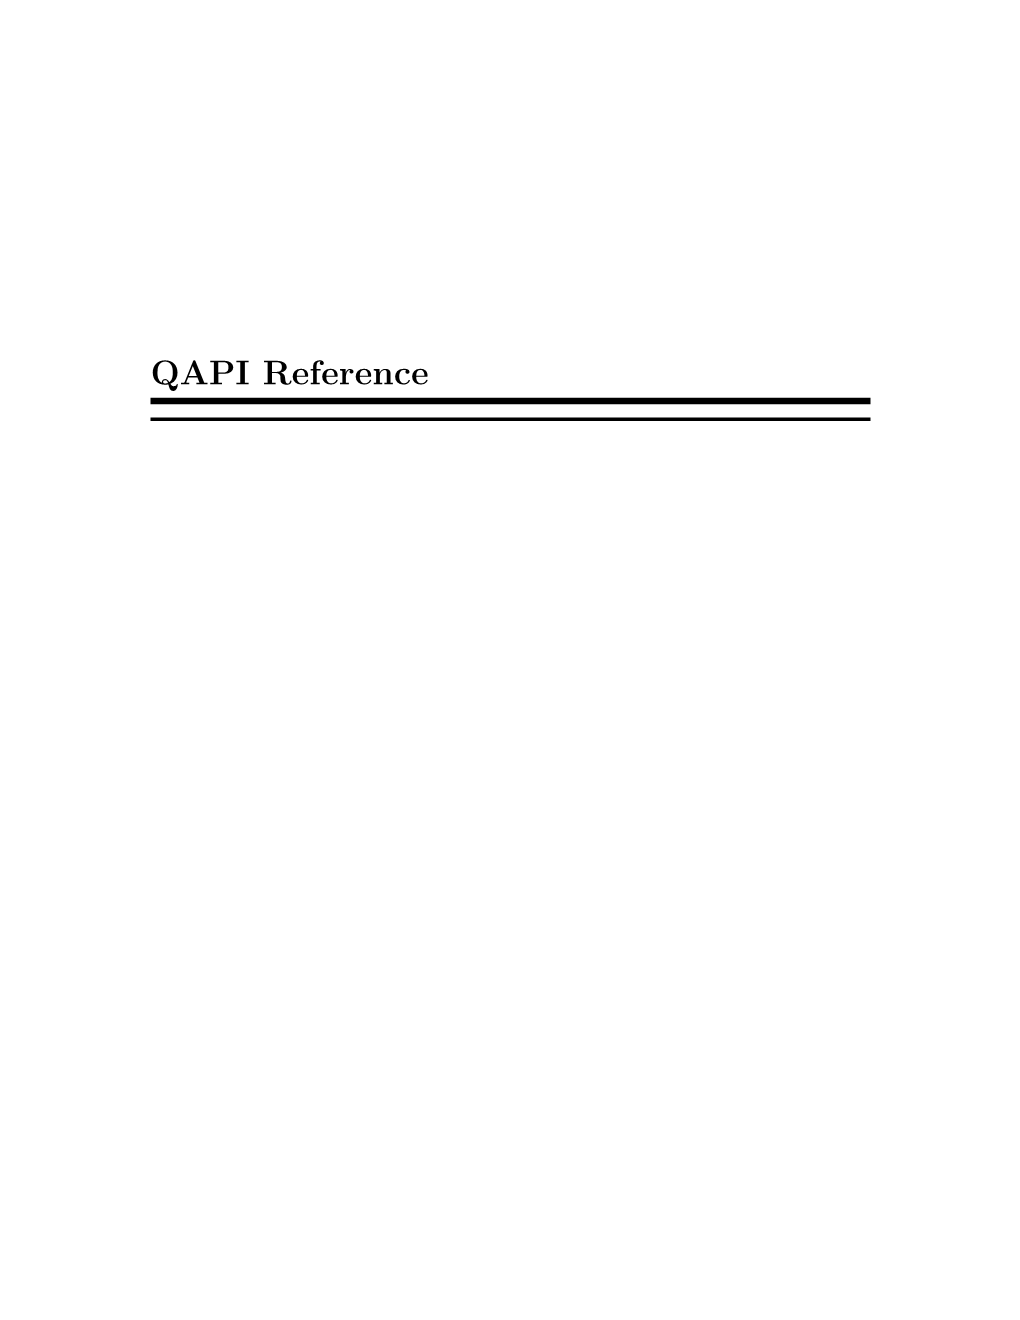 QAPI Reference I